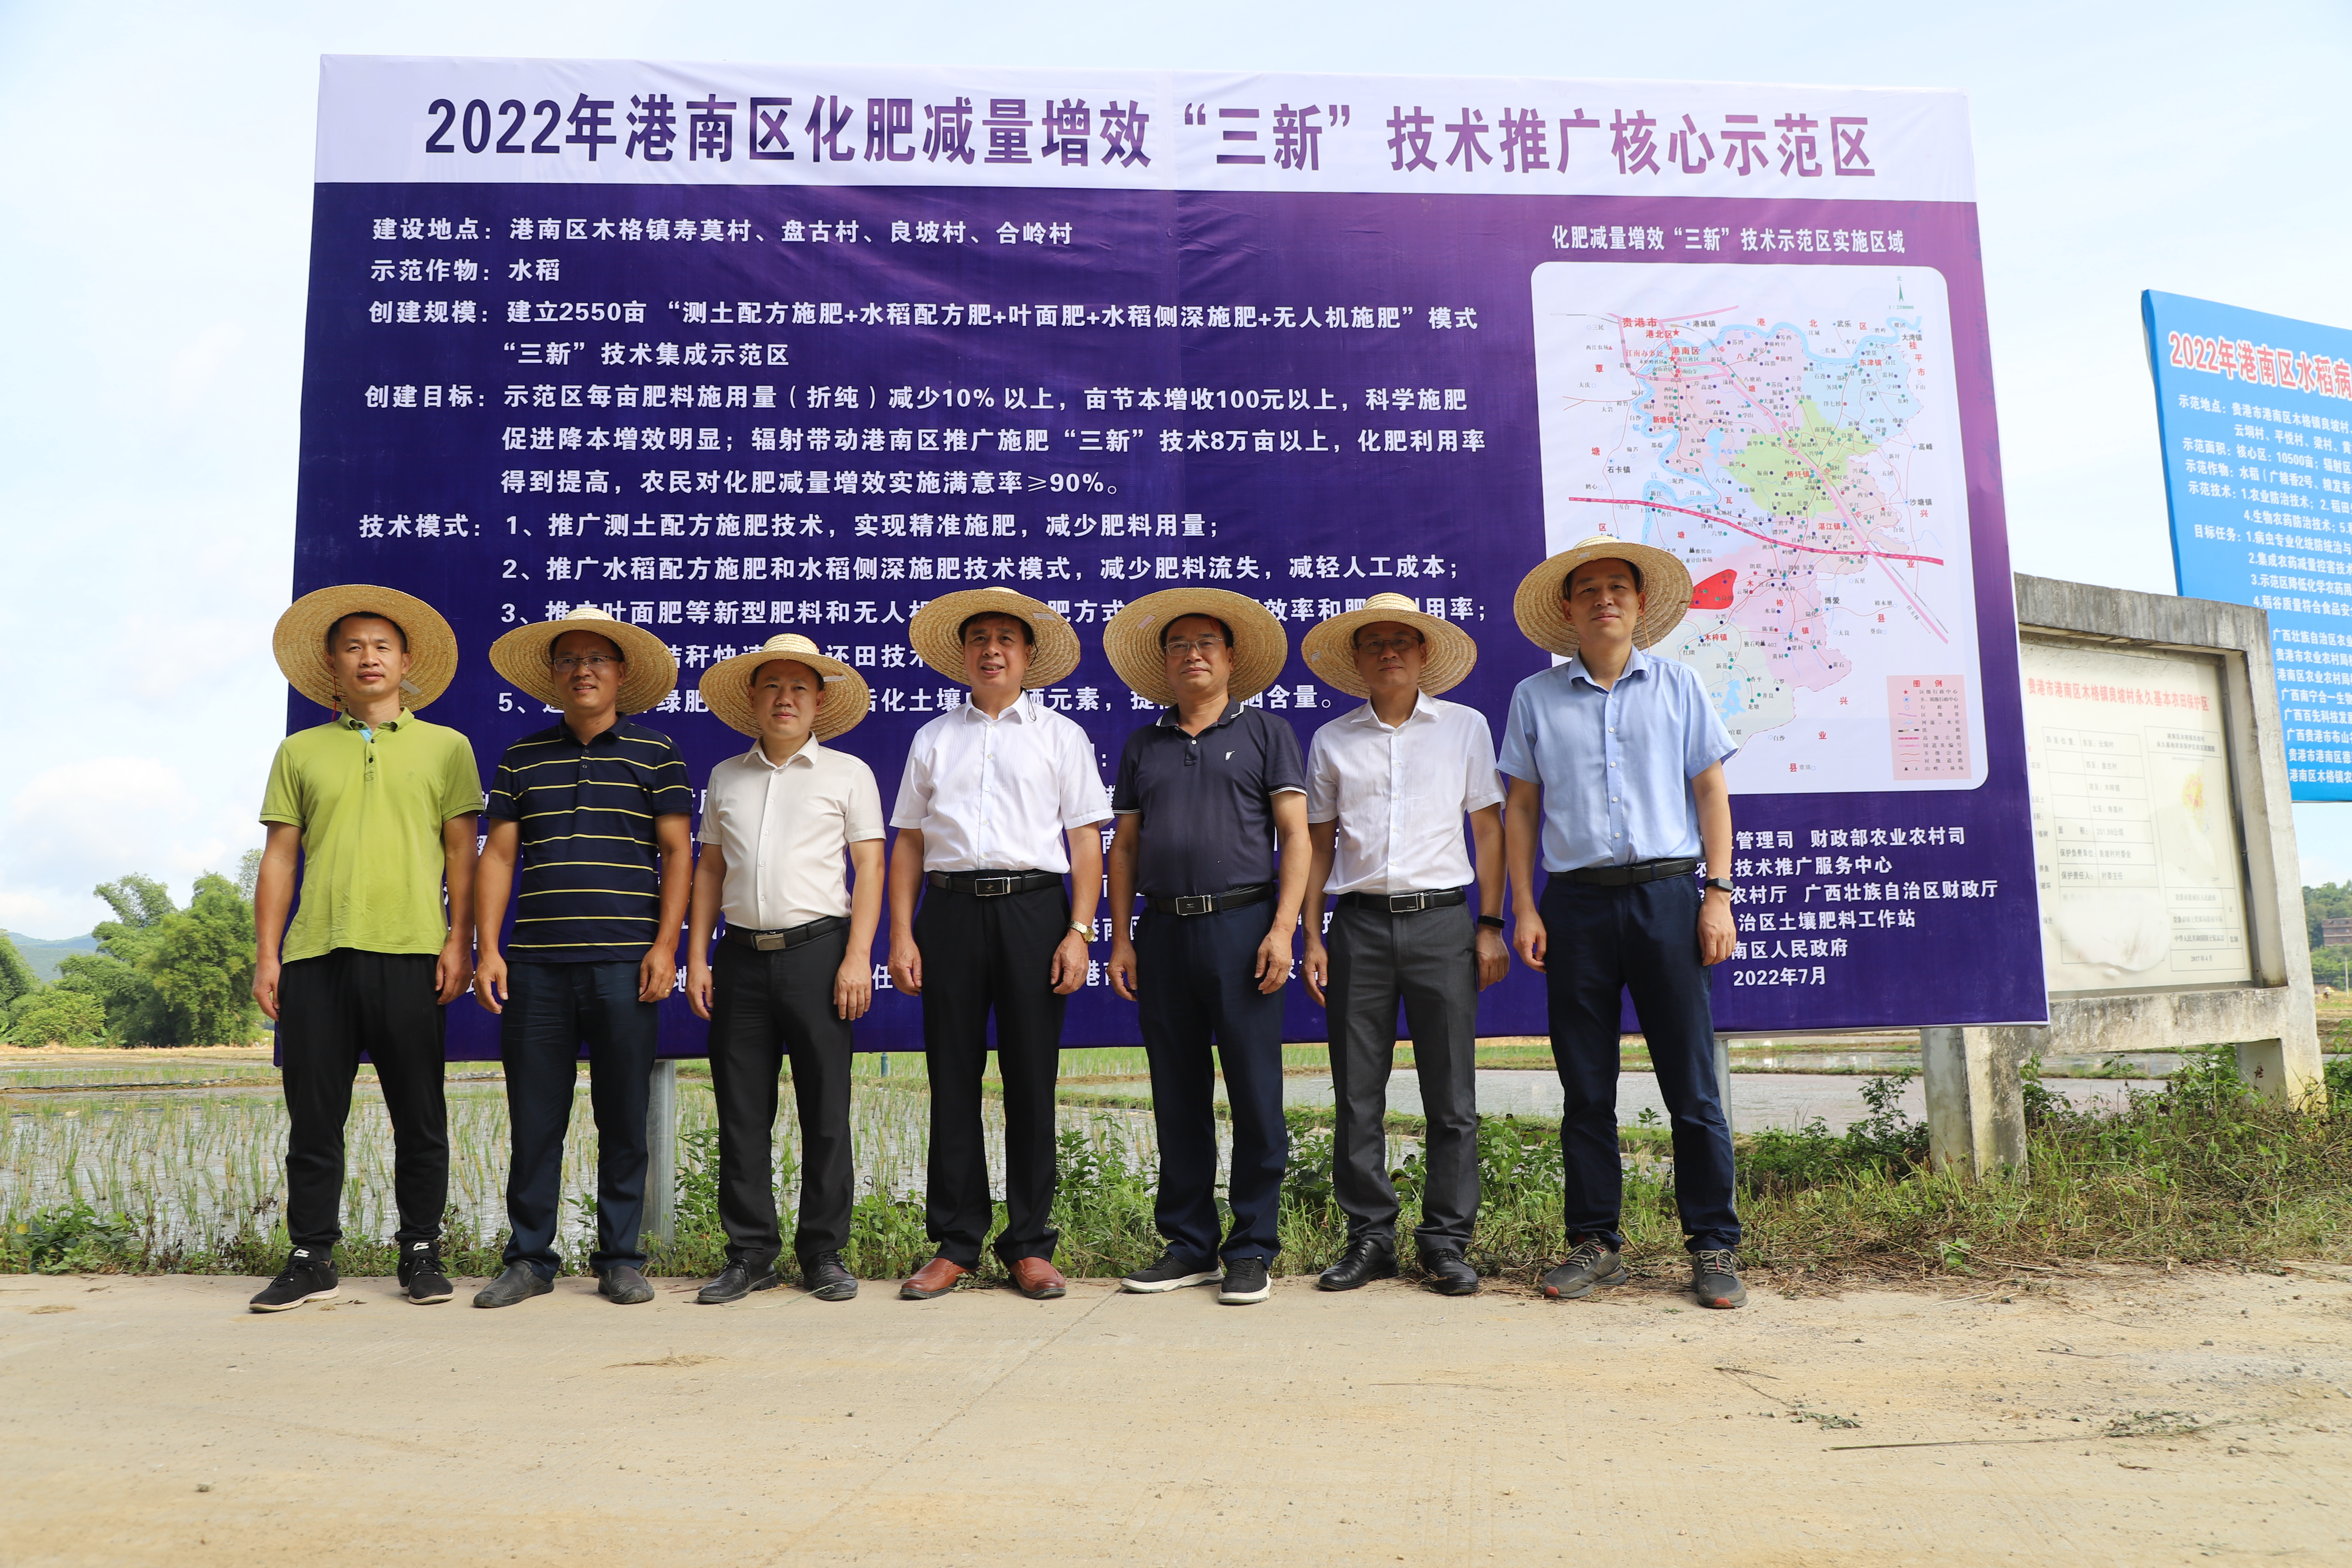 广西11县开启化肥减量增效“三新”技术模式助力稳粮增收